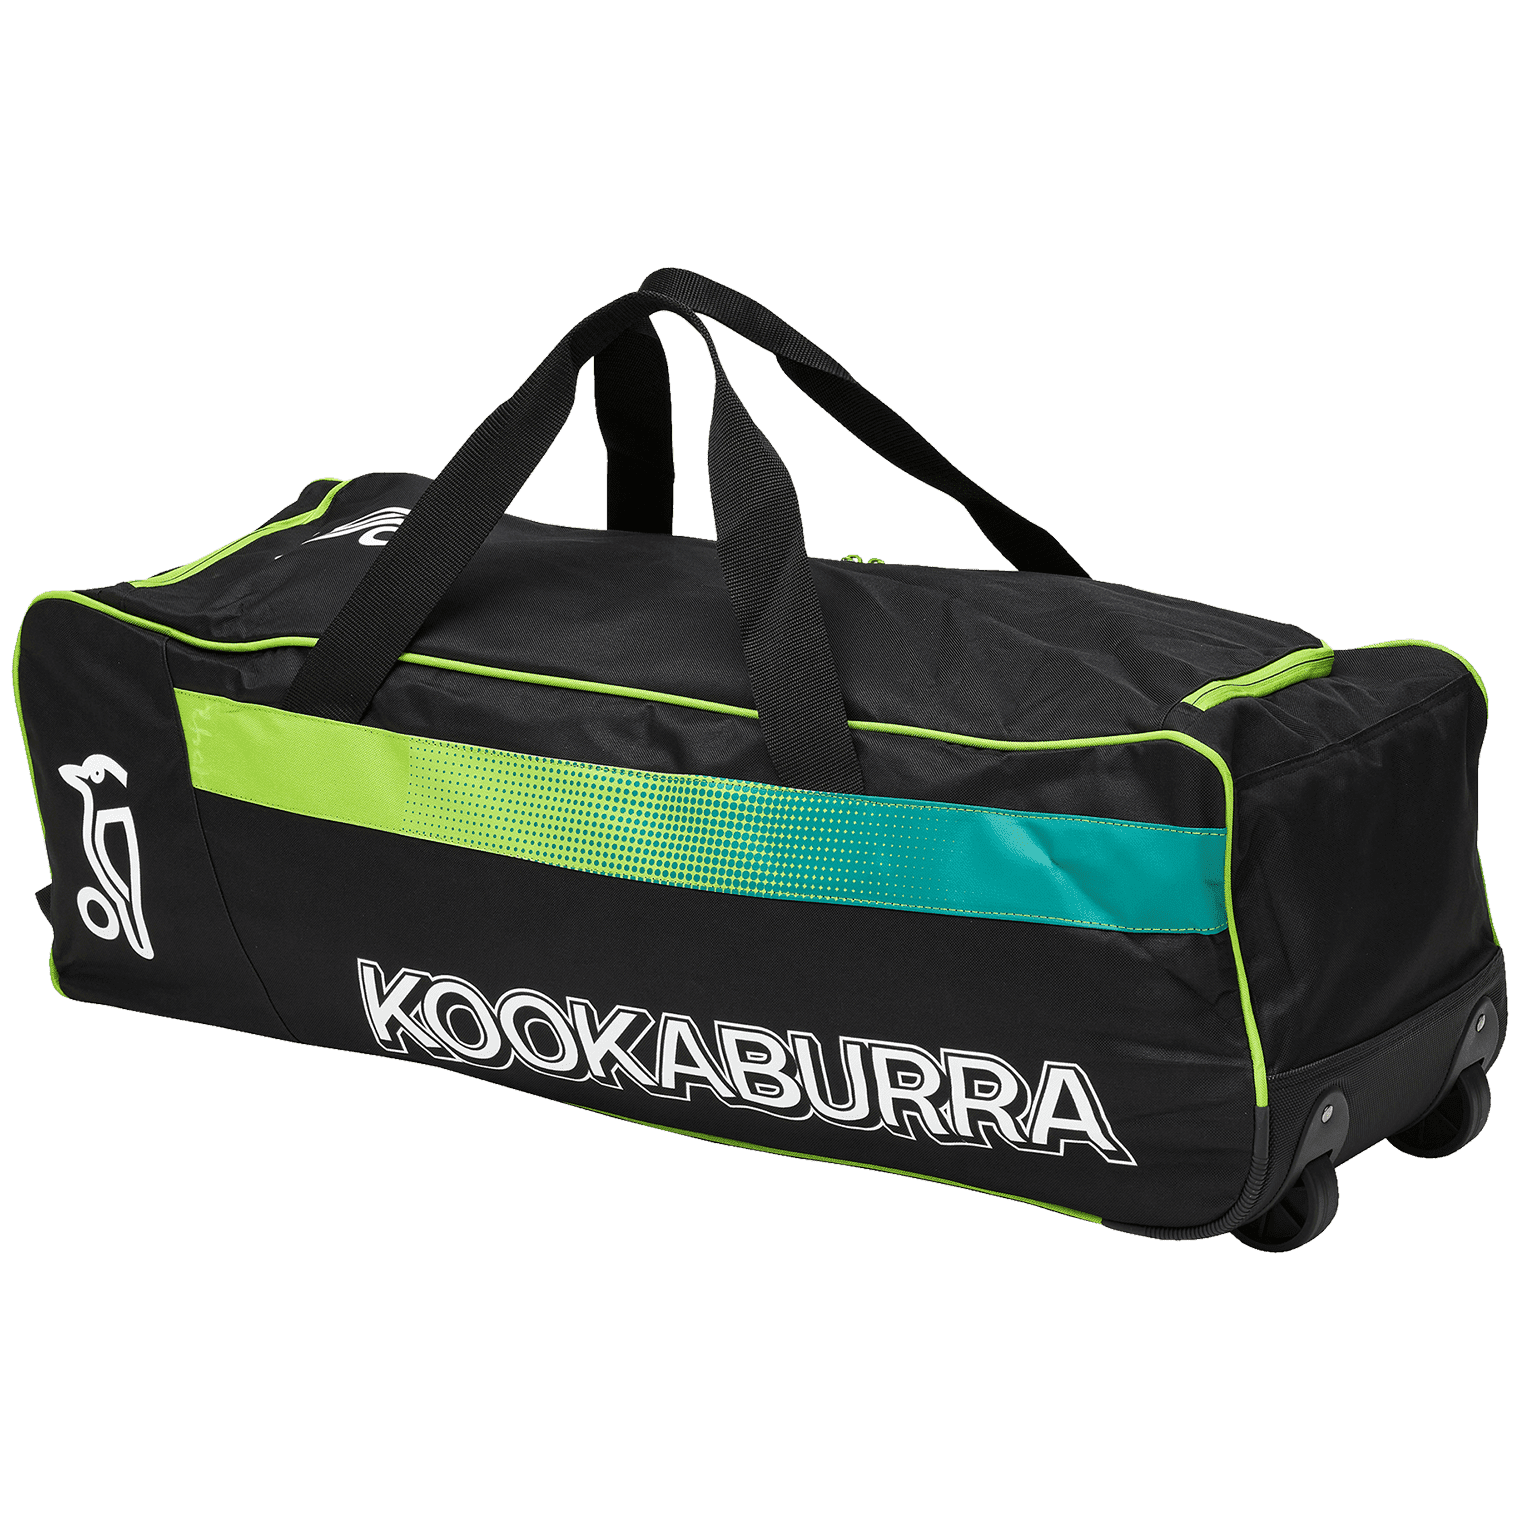 Kookaburra Cricket Bags Lime Kookaburra 5.0 Wheelie Cricket Bag